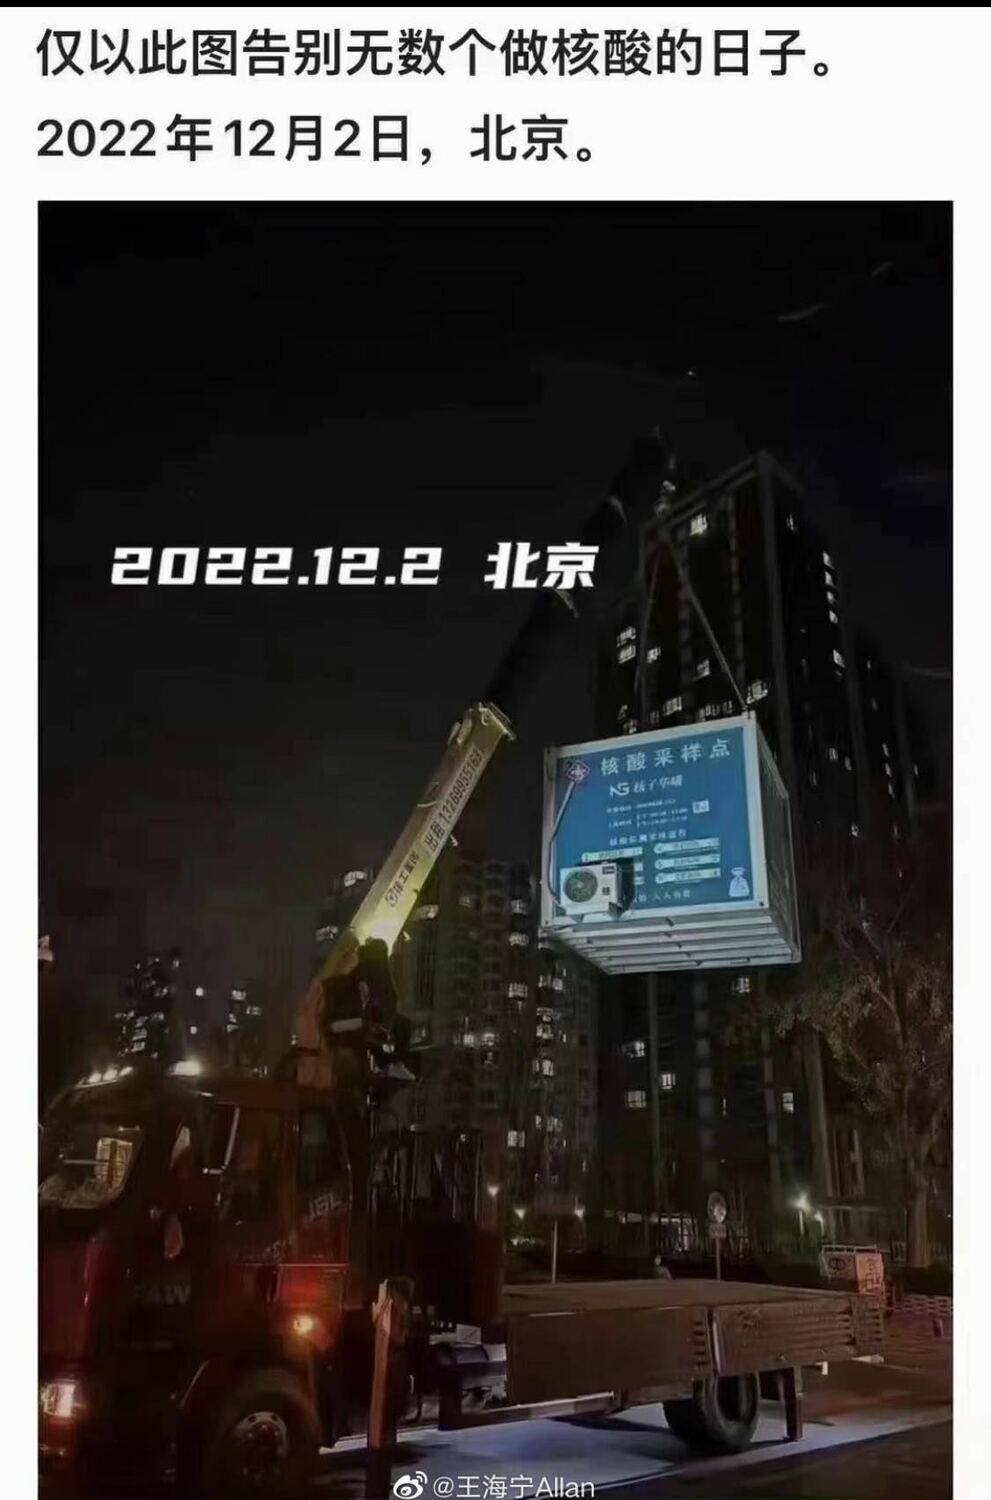 一張北京市核酸檢測亭被機具吊離、並註明2022年12月2日的照片，成為中國網路的熱門梗圖。   圖片來源/微博